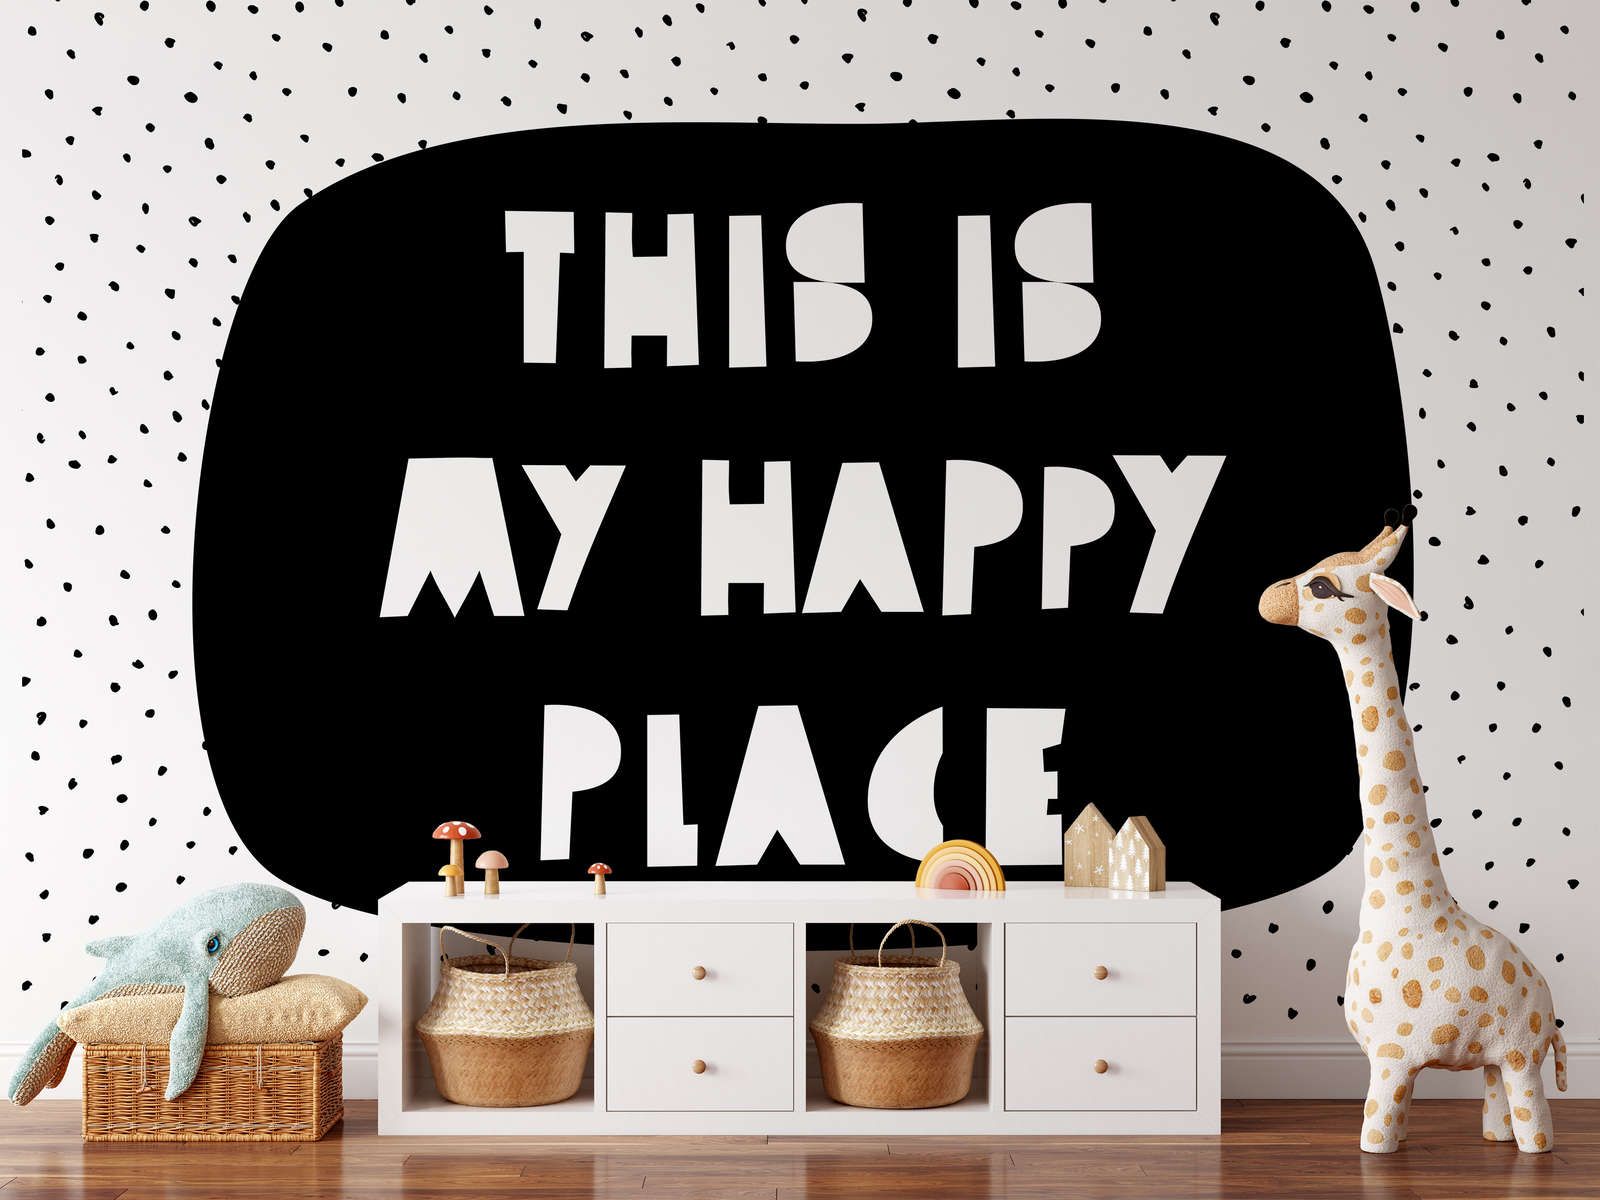             Fototapete fürs Kinderzimmer mit Schriftzug "This is my happy place" – Glattes & mattes Vlies
        